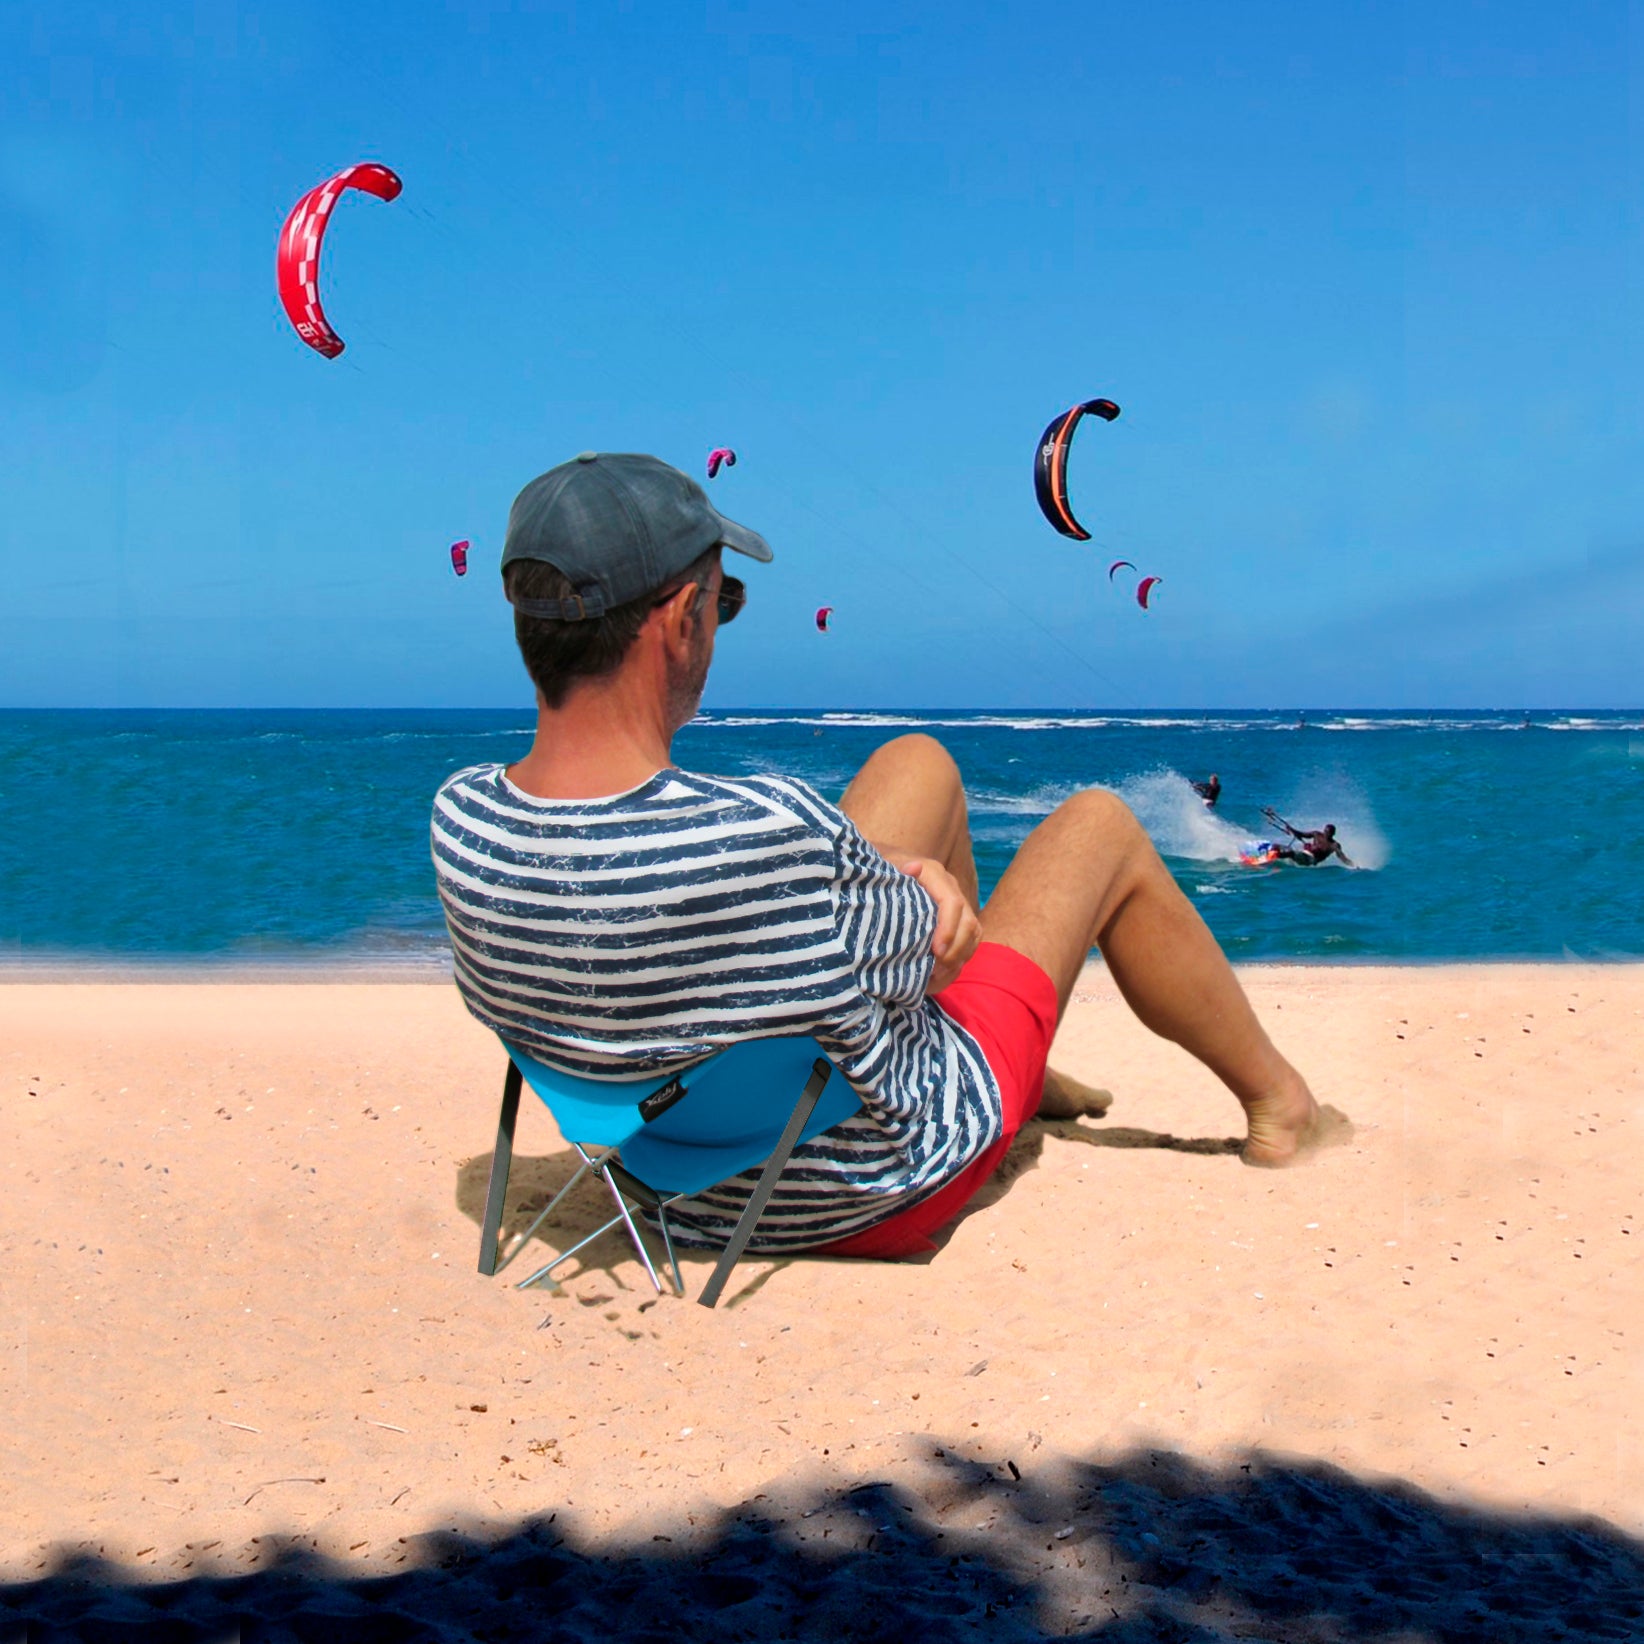 Y-ply • Opvouwbaar Strandstoeltje • Beach Lounger • Y-Ply is de ideale metgezel om te relaxen aan het strand of in het park. Gebruik hem als ondersteuning voor je hoofd, rug, arm of voeten. Voor elke positie biedt hij veel comfort. Dit opvouwbare strandstoeltje is gemakkelijk mee te nemen in de bijgeleverde tas.